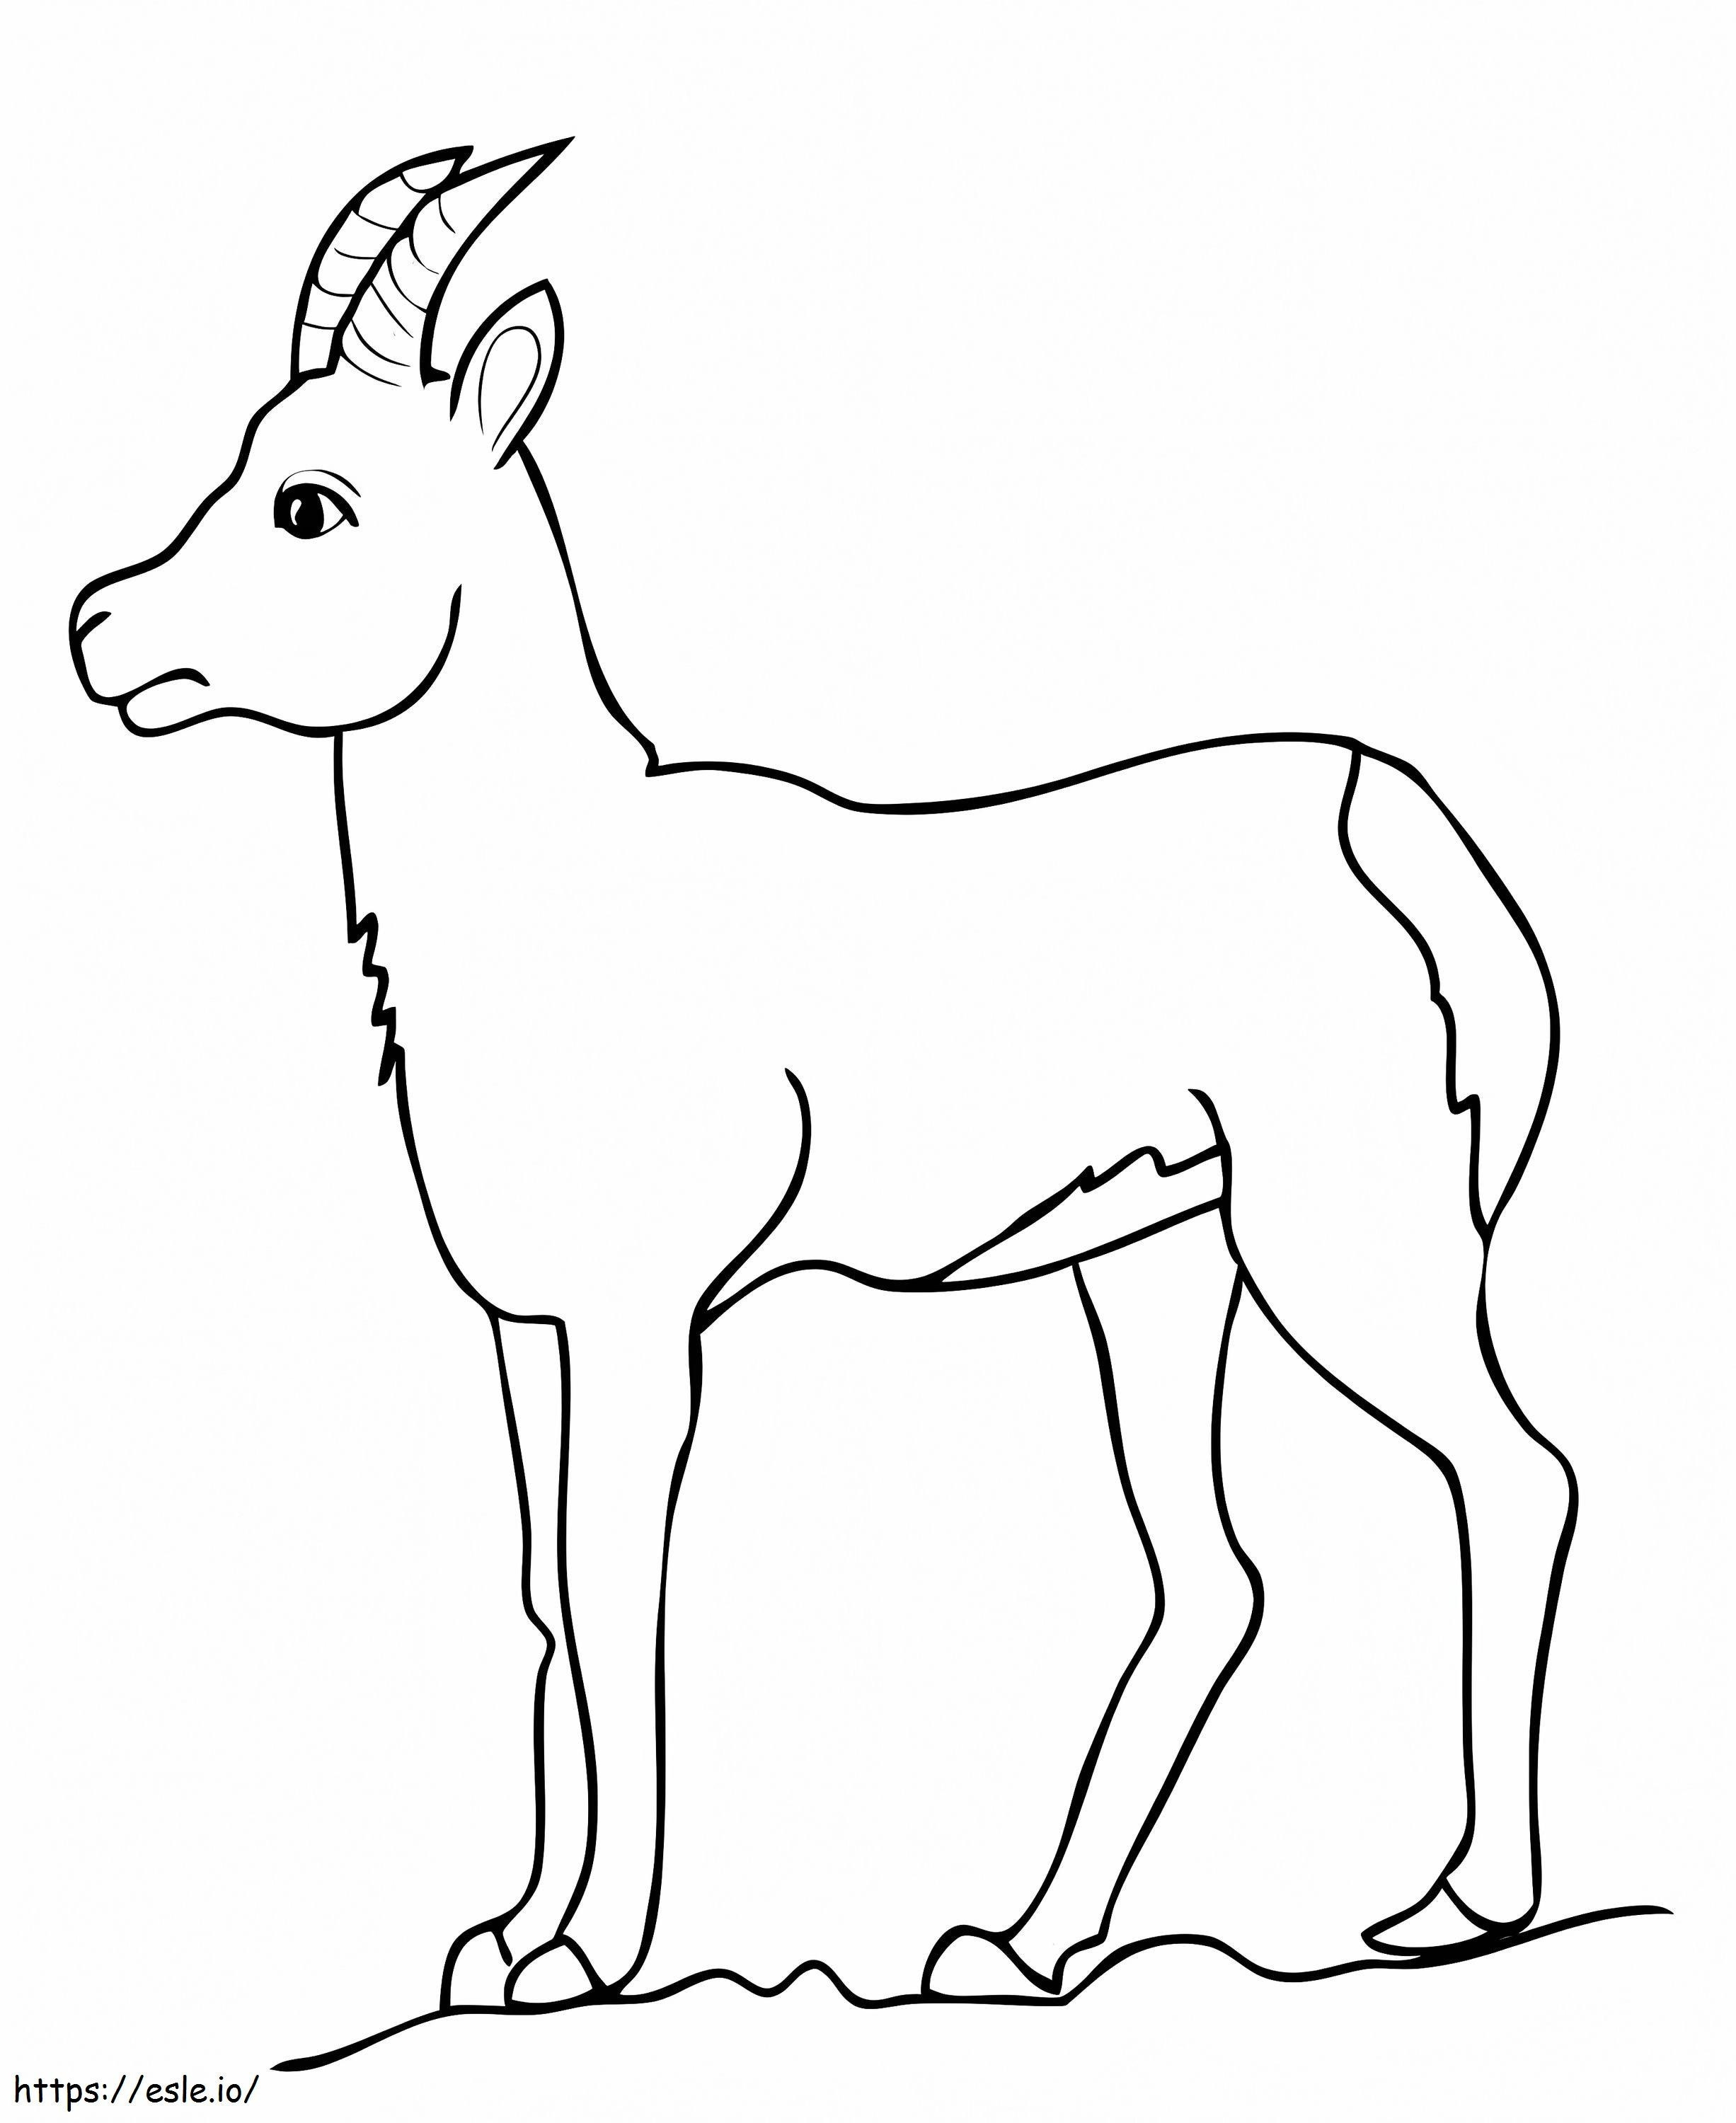 Gämse-Ziegen-Antilope ausmalbilder